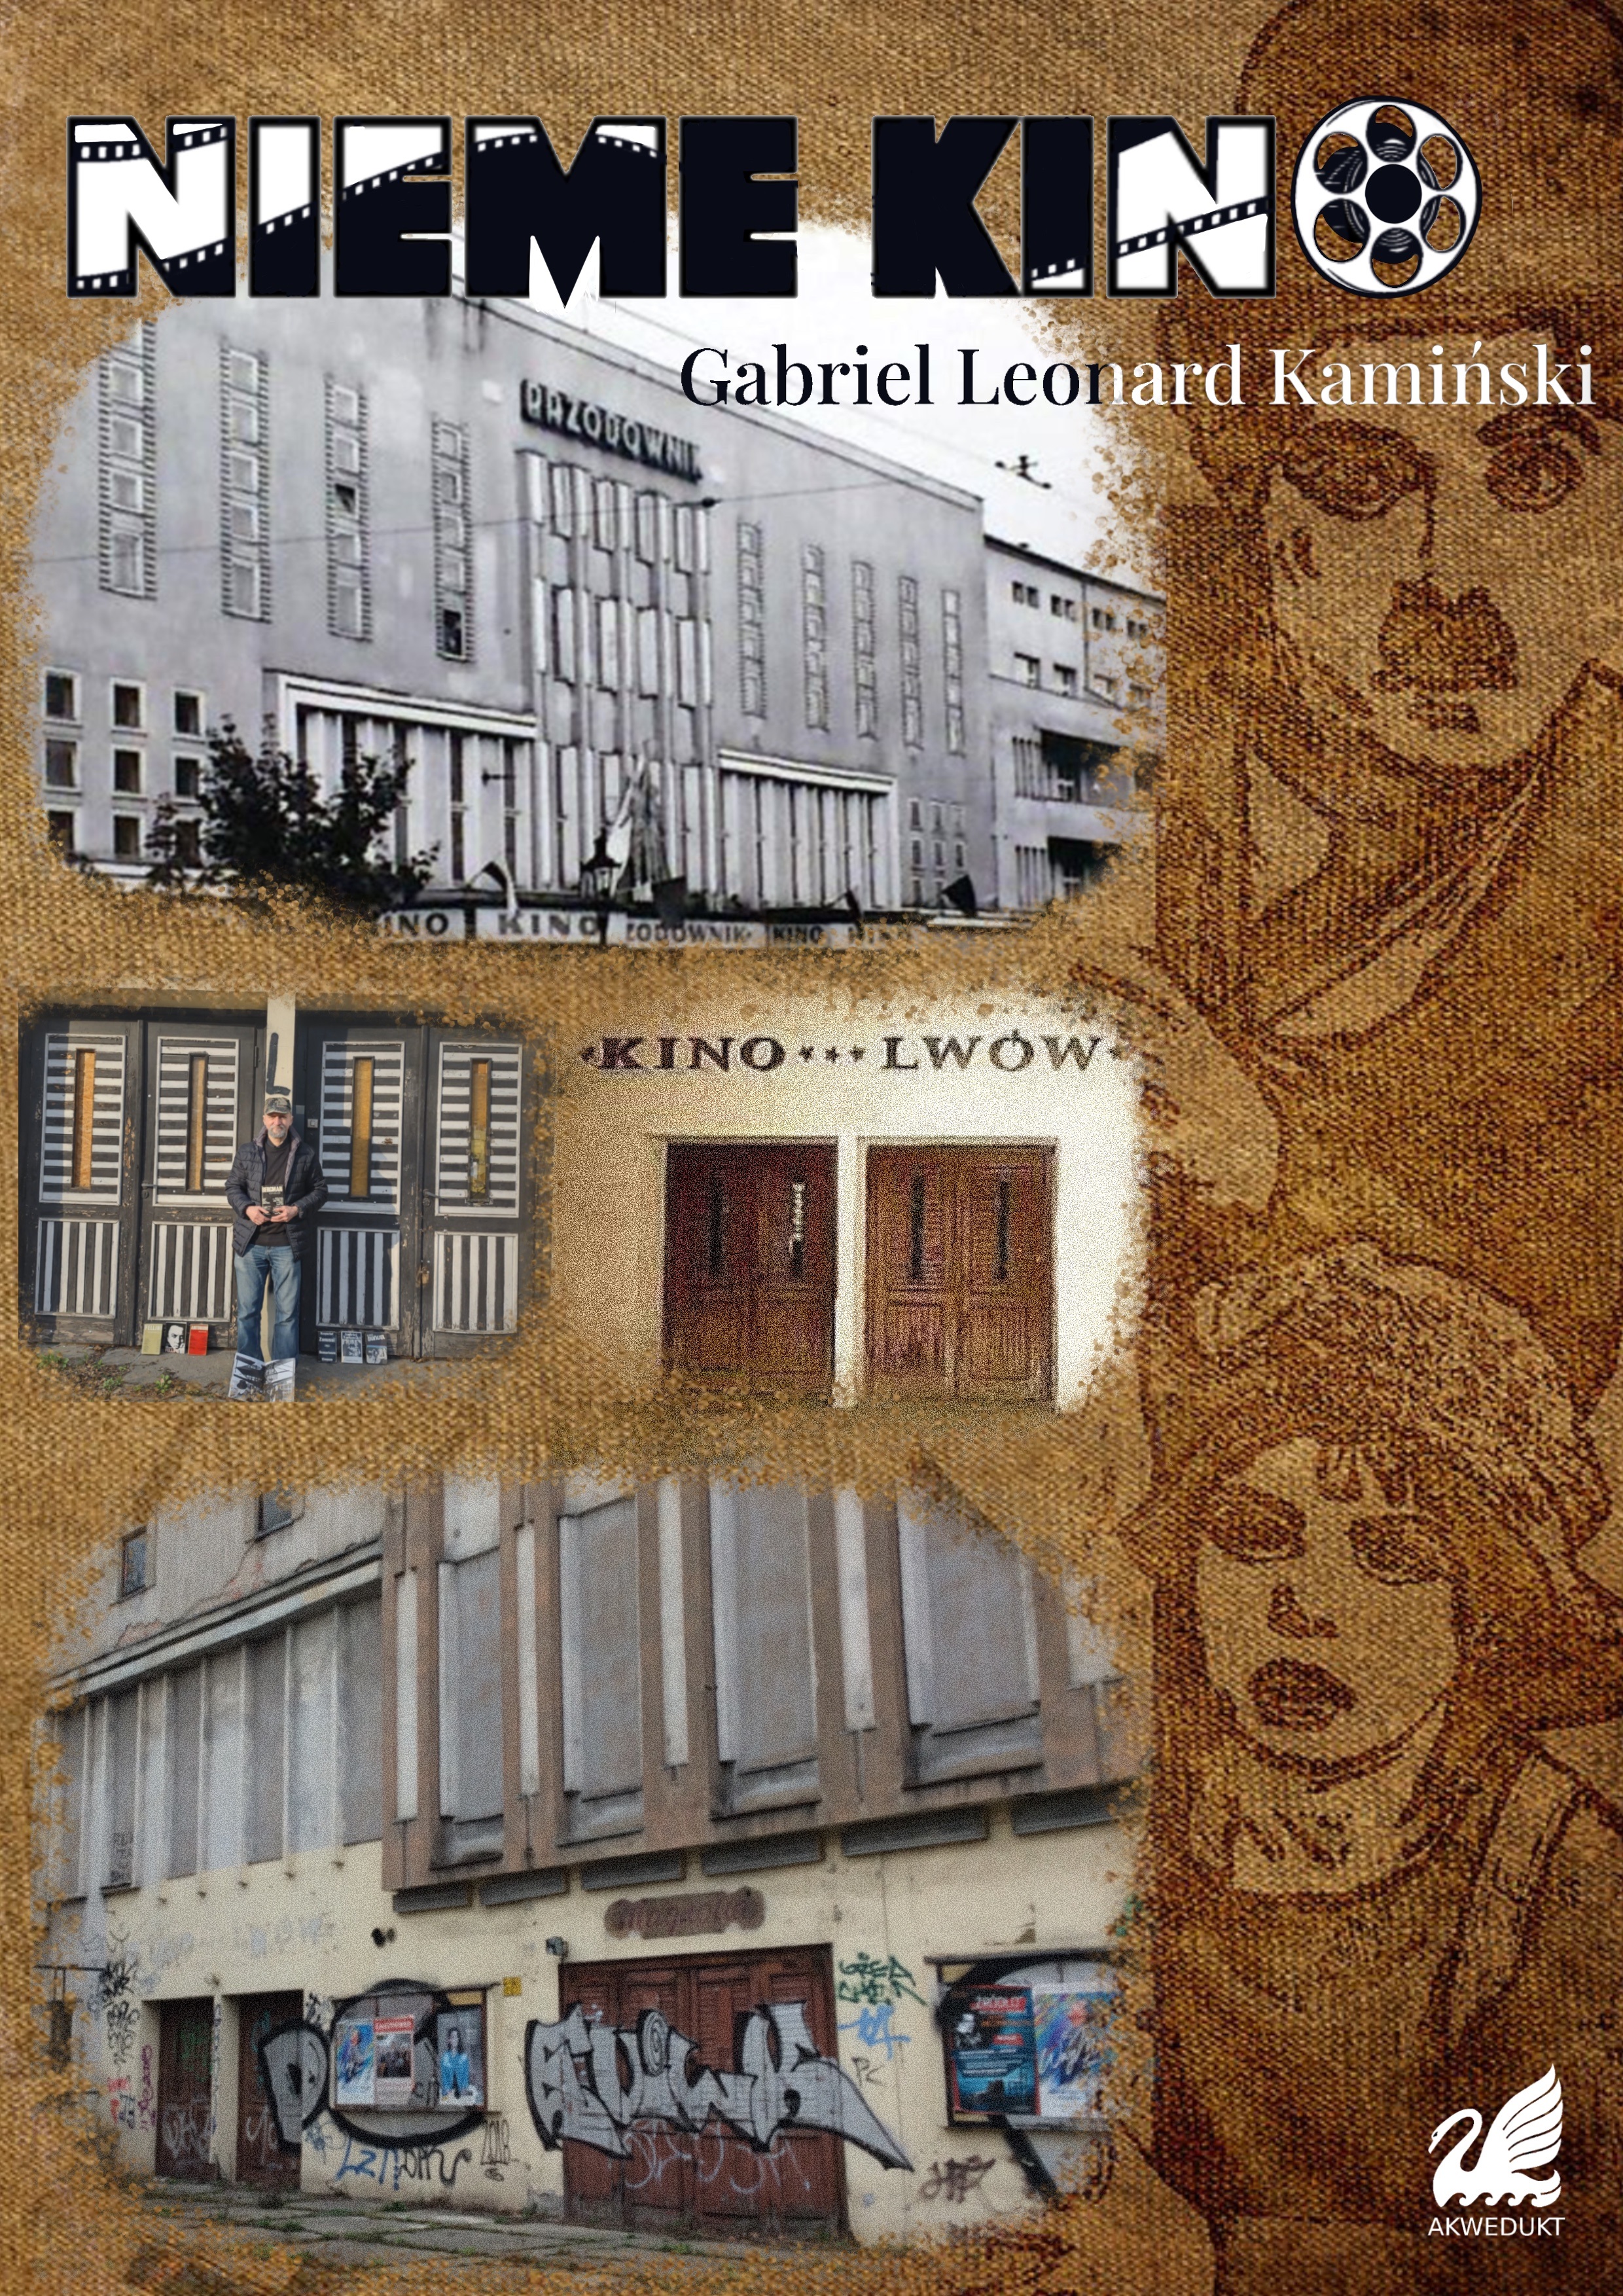 Klub Muzyki i Literatury we Wrocławiu zaprasza na prezentację książki poetyckiej Gabriela Leonarda Kamińskiego pt. „Nieme kino”